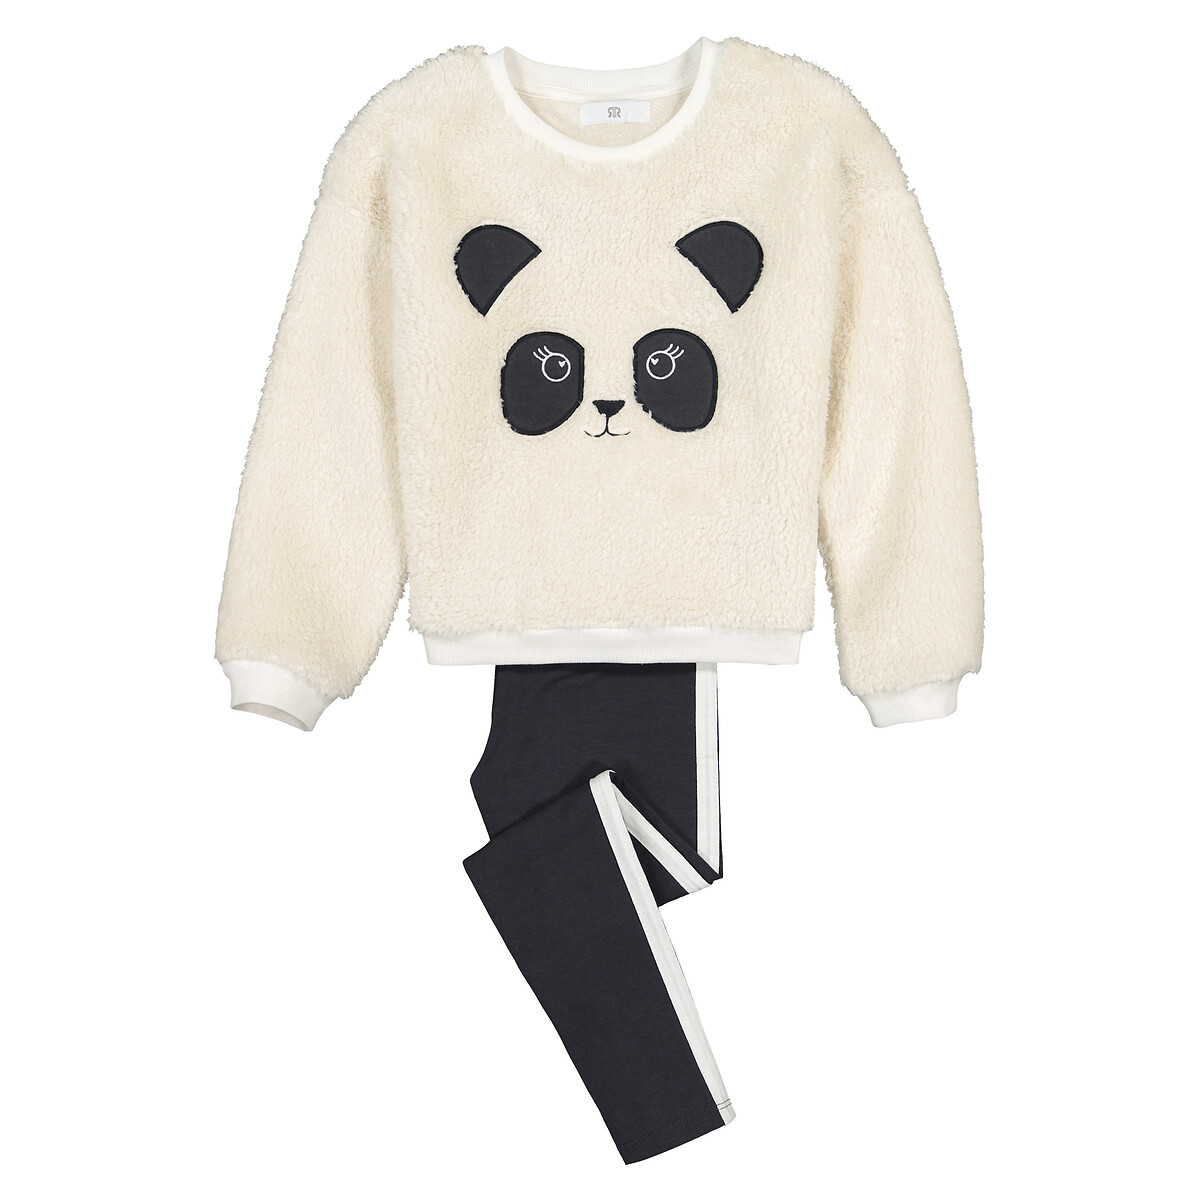 Bestickter Pyjama, "Panda" von LA REDOUTE COLLECTIONS